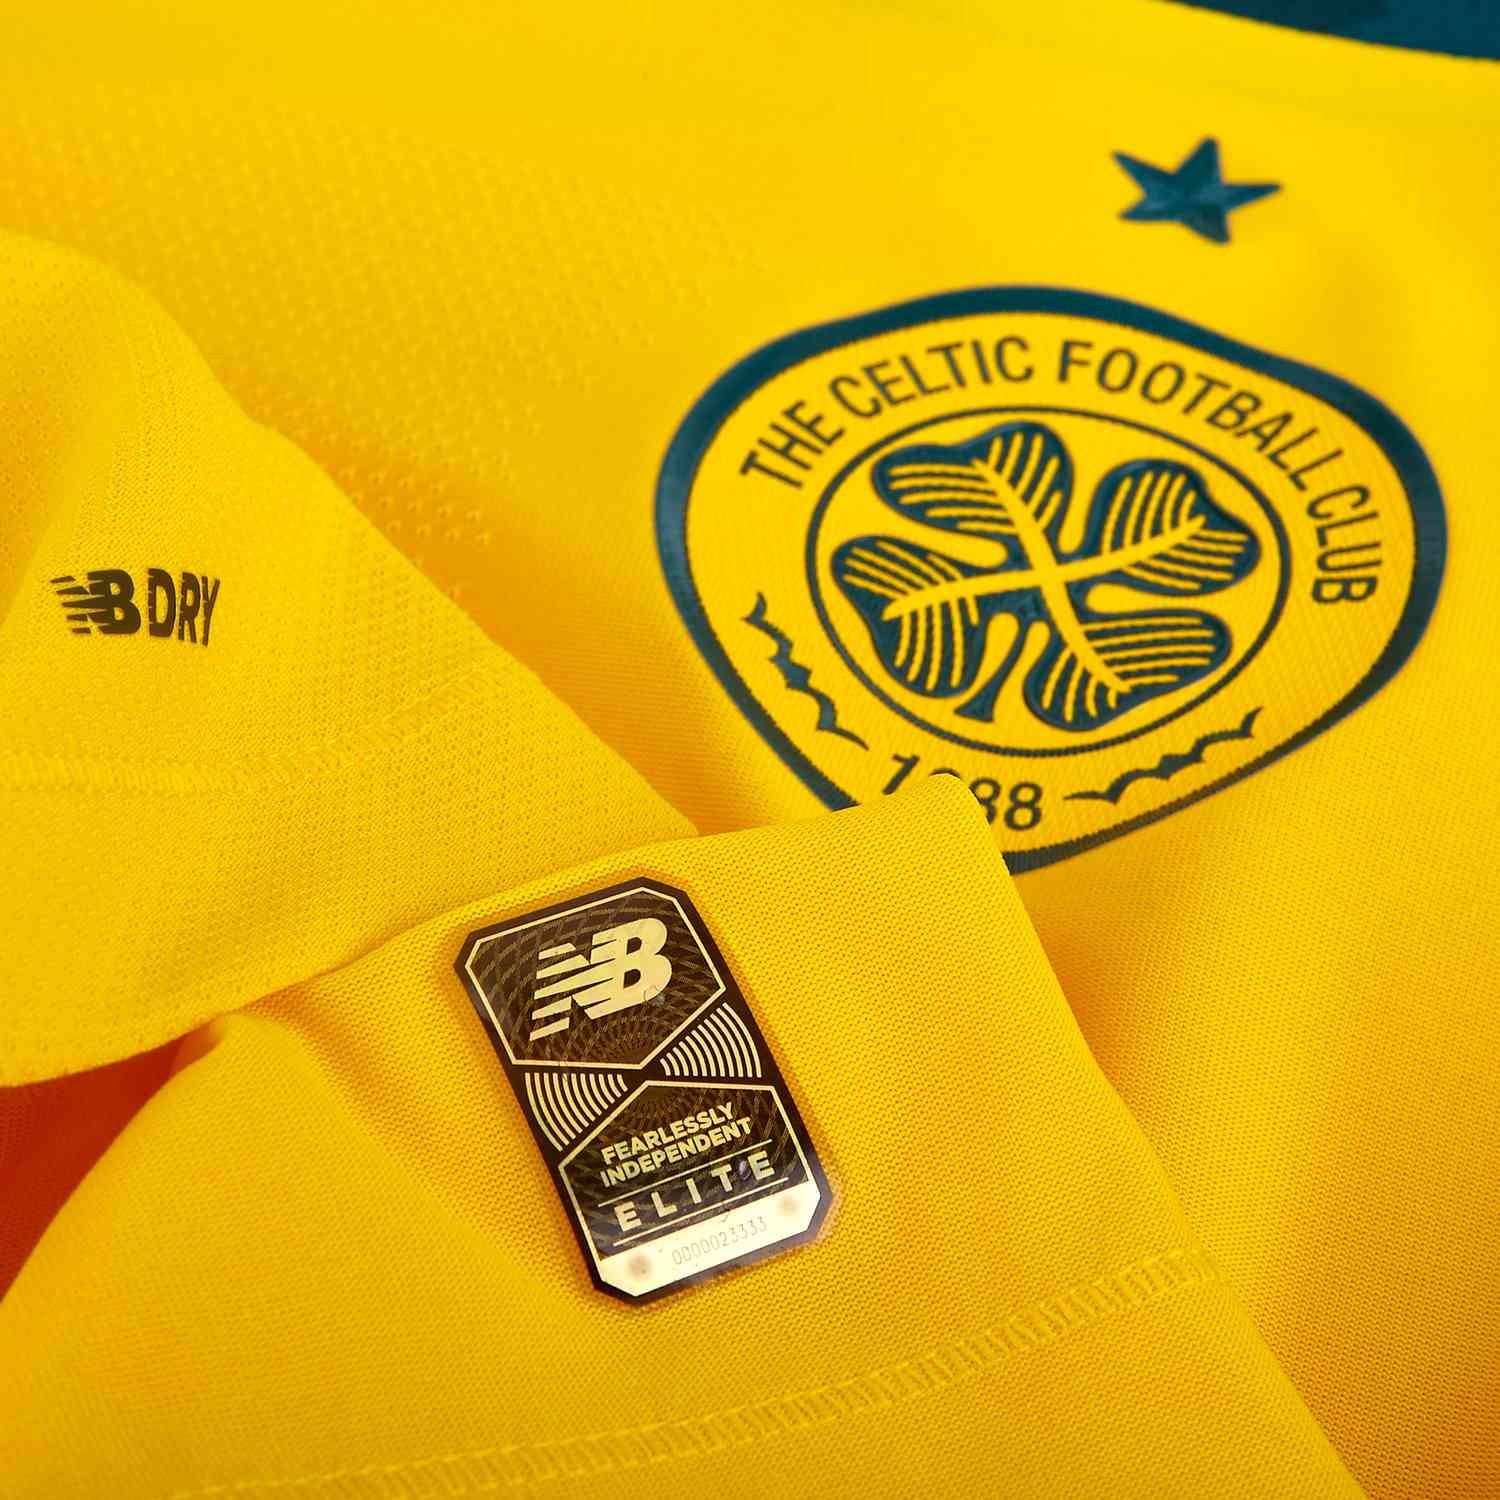 Celtic FC New Balance 2019/20 Away Jersey Kit Shirt Yellow New